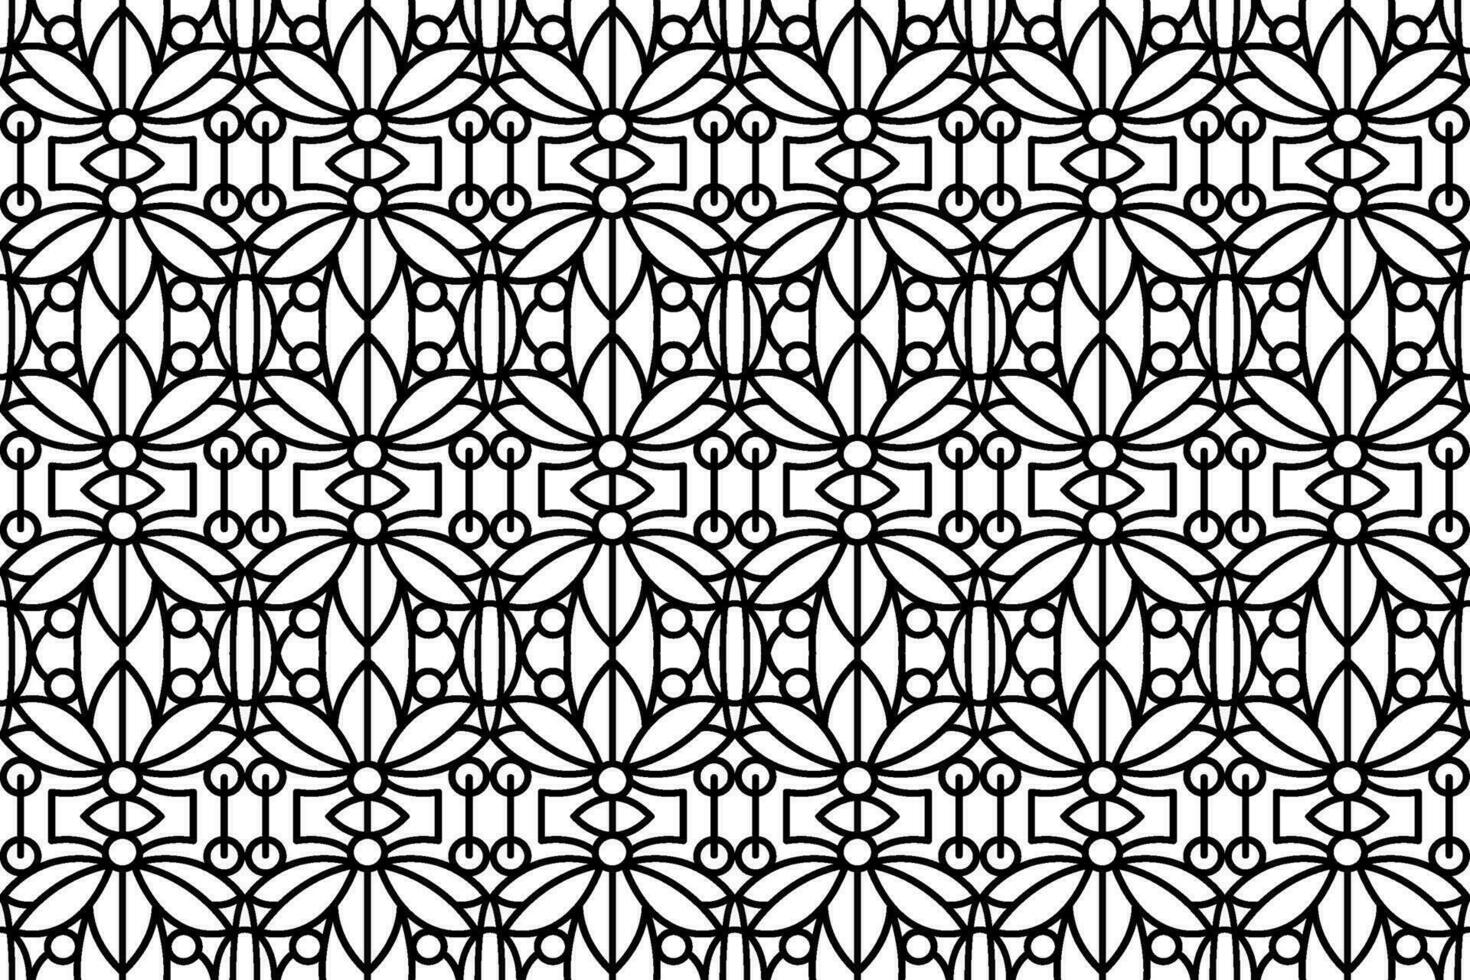 veter, trimmen lijn kunst naadloos patroon. zwart en wit abstract herhalen patroon voor achtergronden, textiel, kleding stof, omslag, achtergronden, het drukken en andere ontwerpen. vector